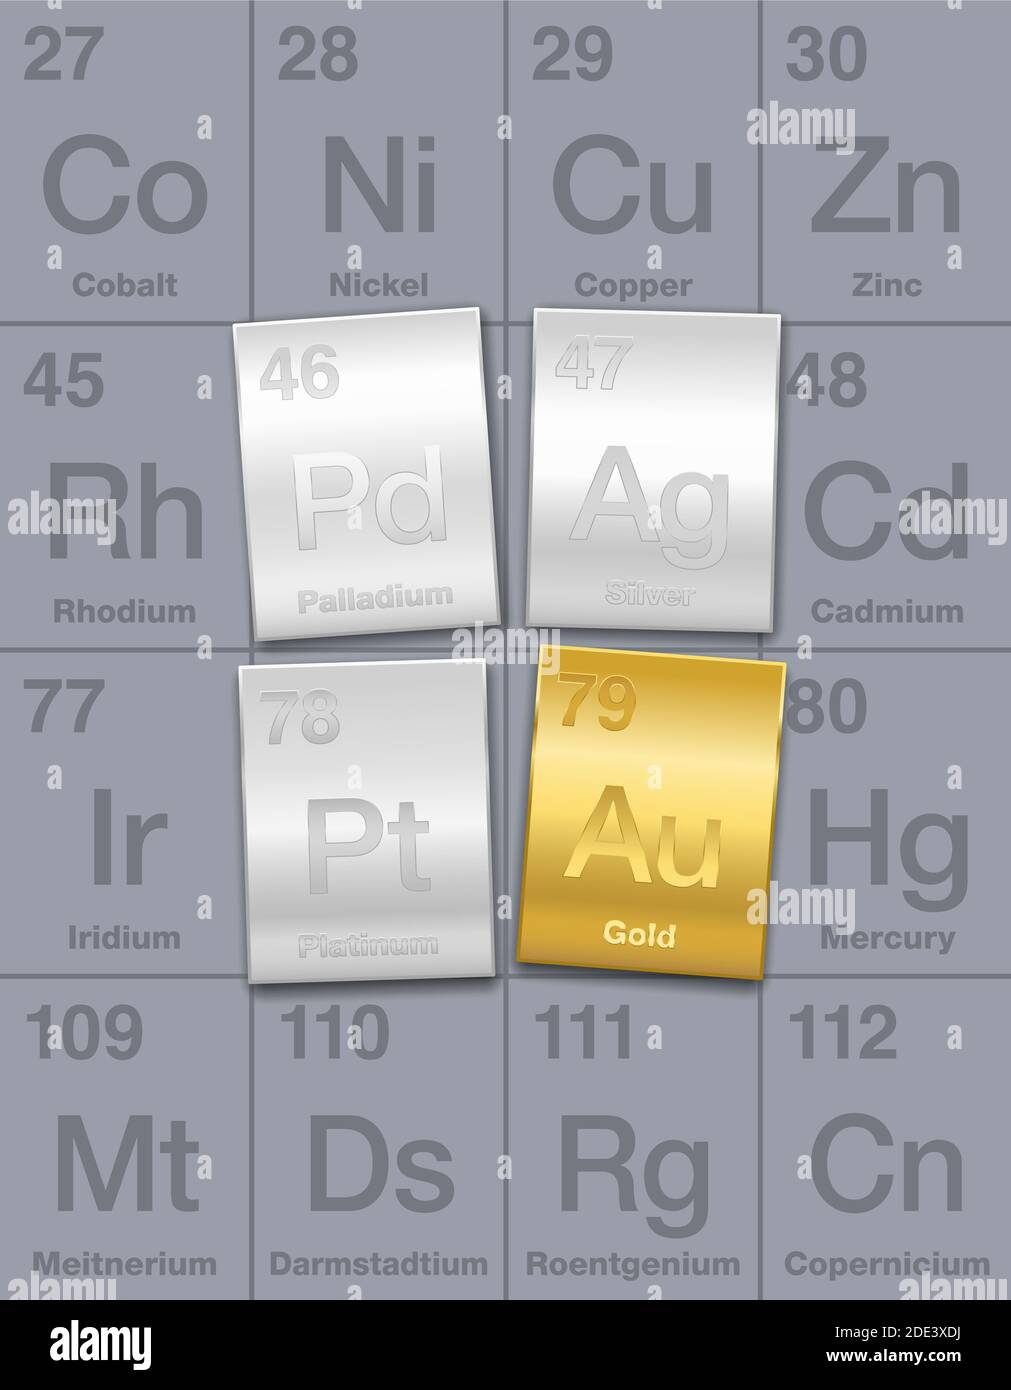 Edelmetalle auf Periodensystem. Gold-, Silber-, Platin- und Palladiumbarren. Chemische Elemente mit hohem wirtschaftlichen Wert, als Investition angesehen. Stockfoto